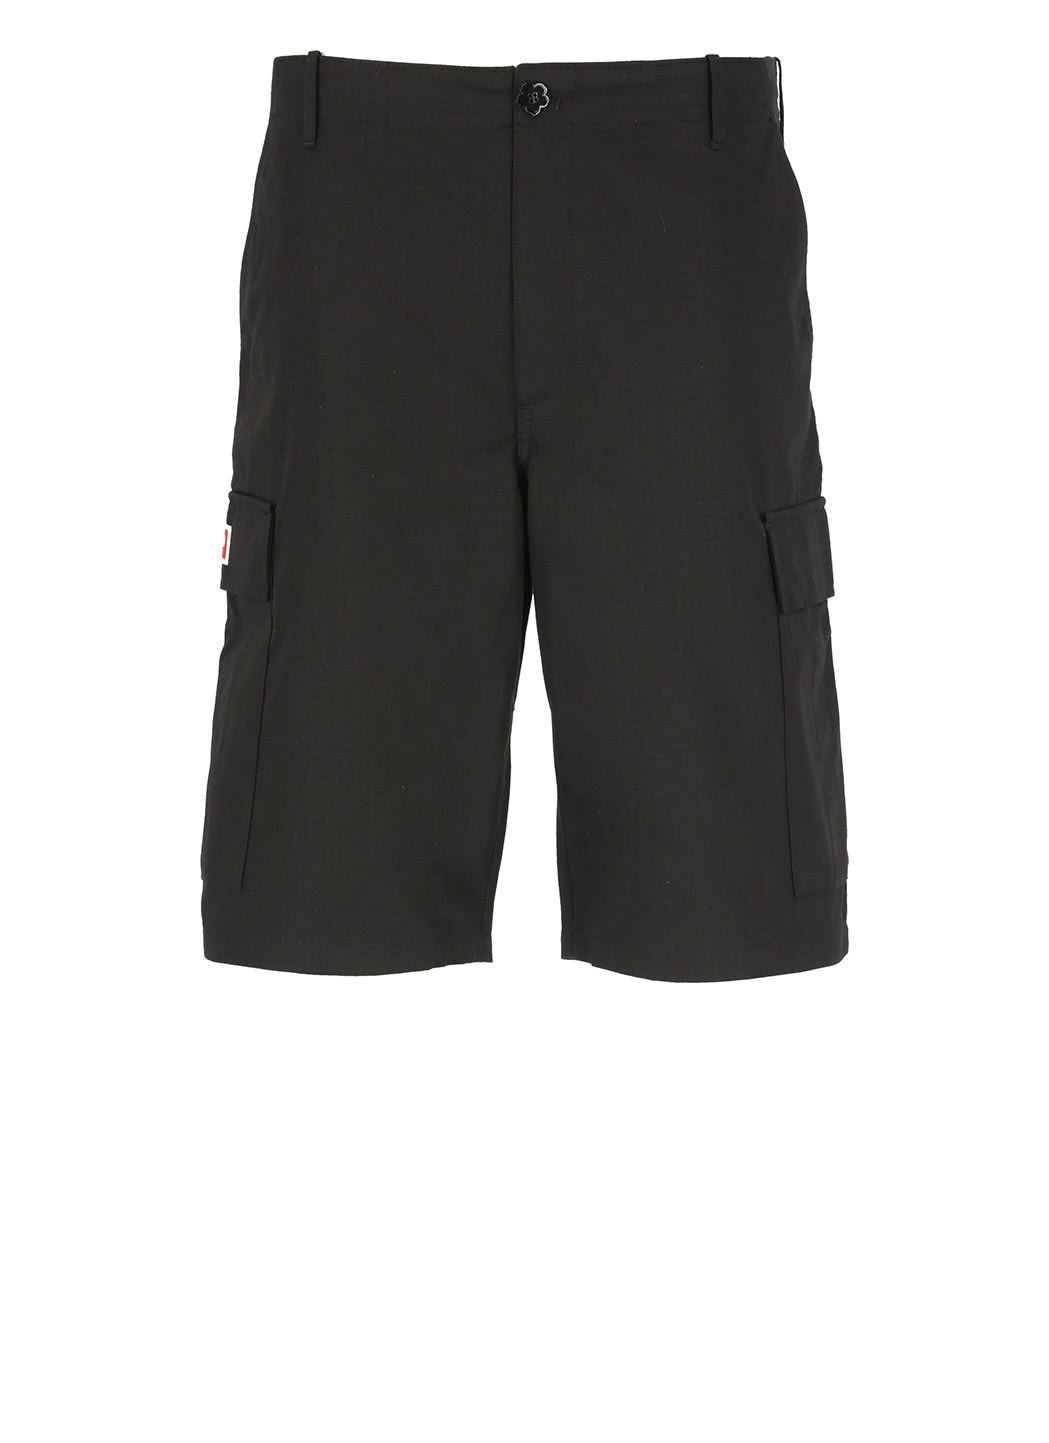 Cargo Workwear Shorts